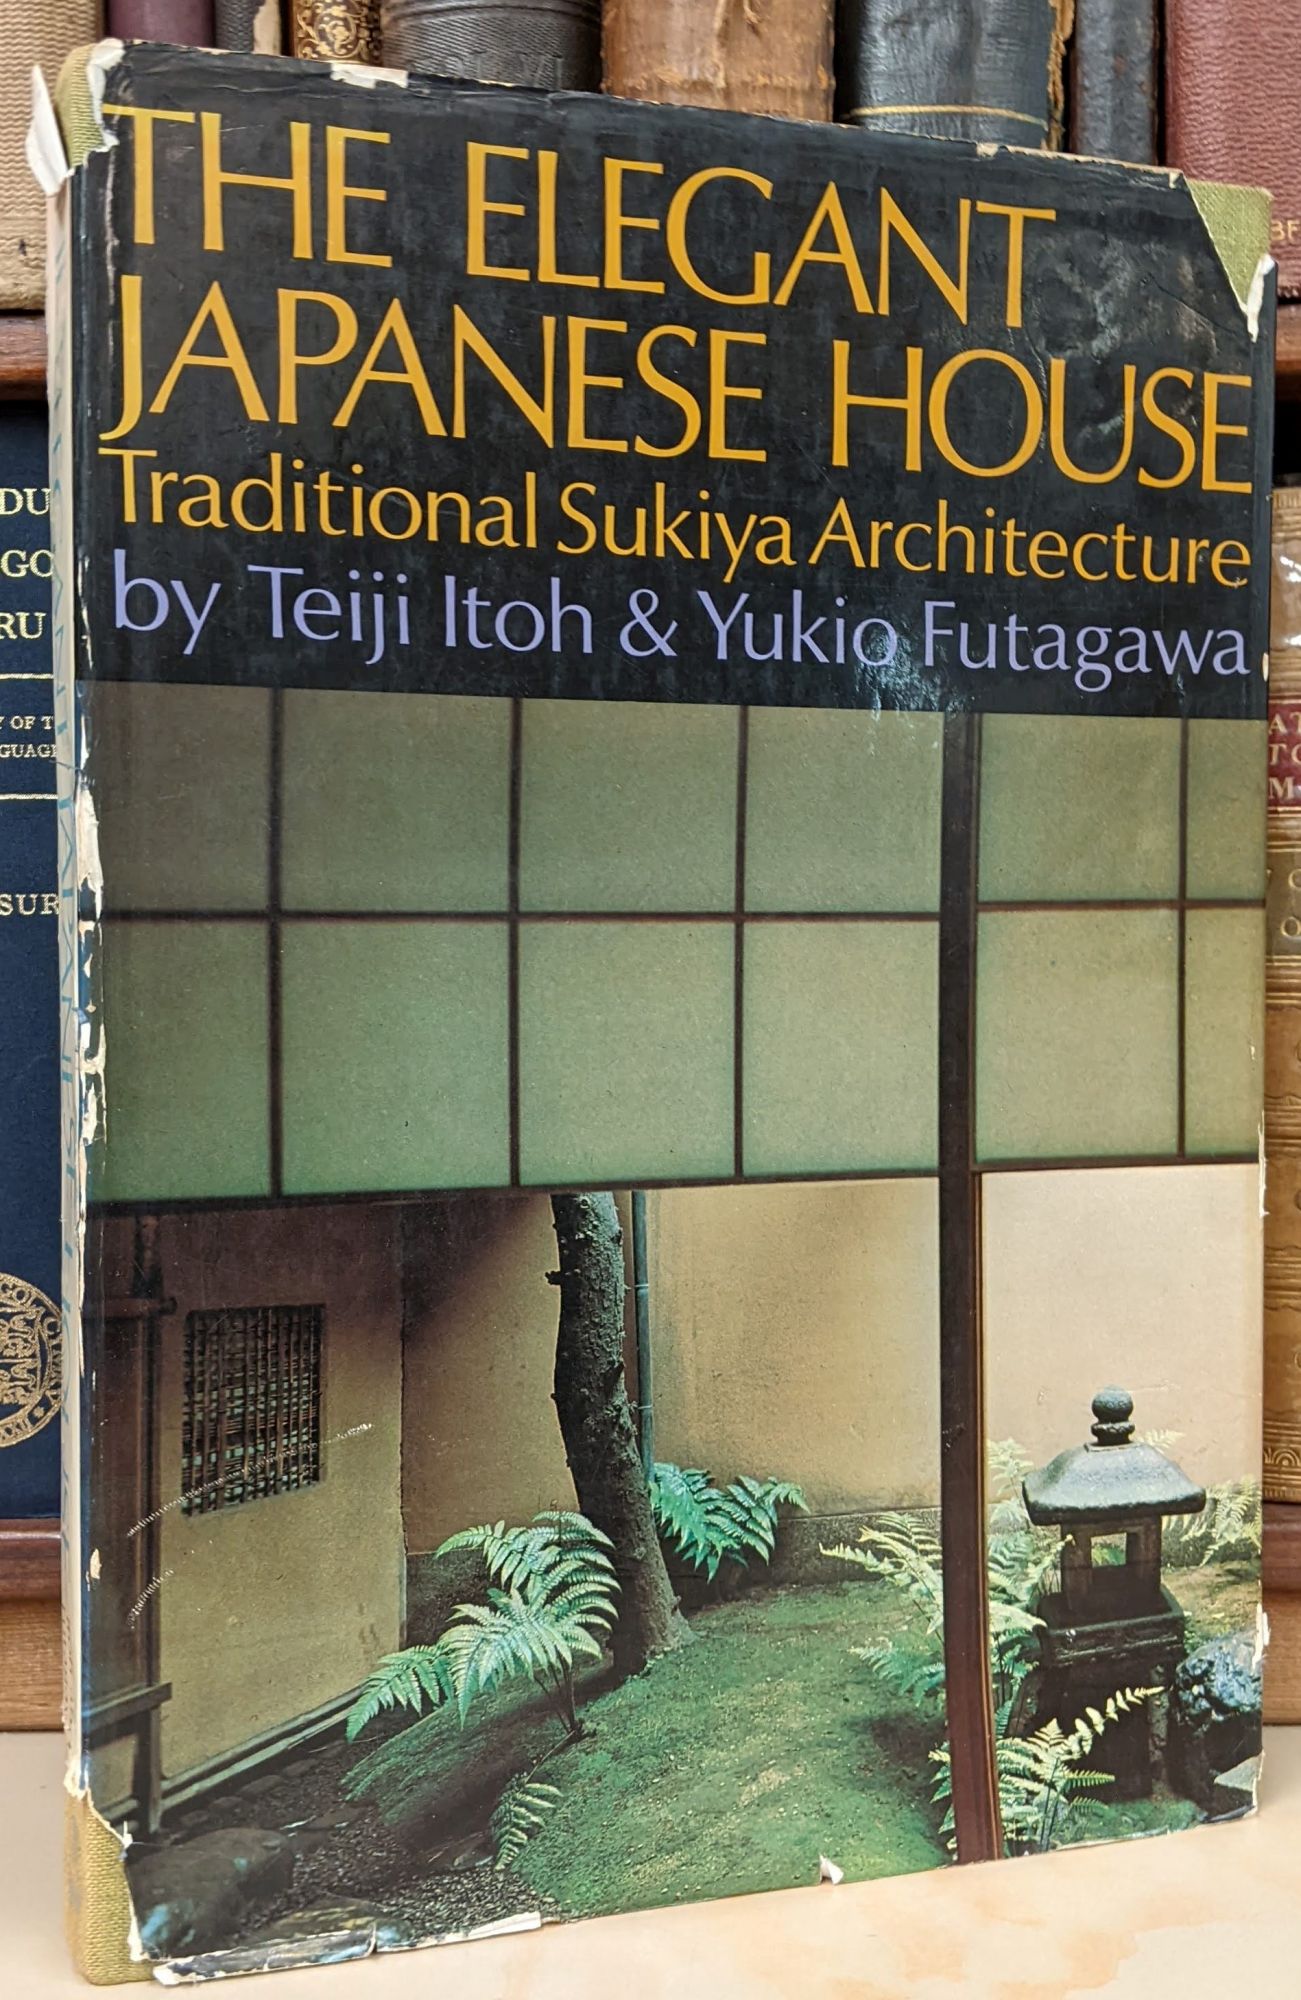 The Elegant Japanese House: Traditional Sukiya Architecture by Teiji Itoh,  Yukio Futagawa on Moe's Books